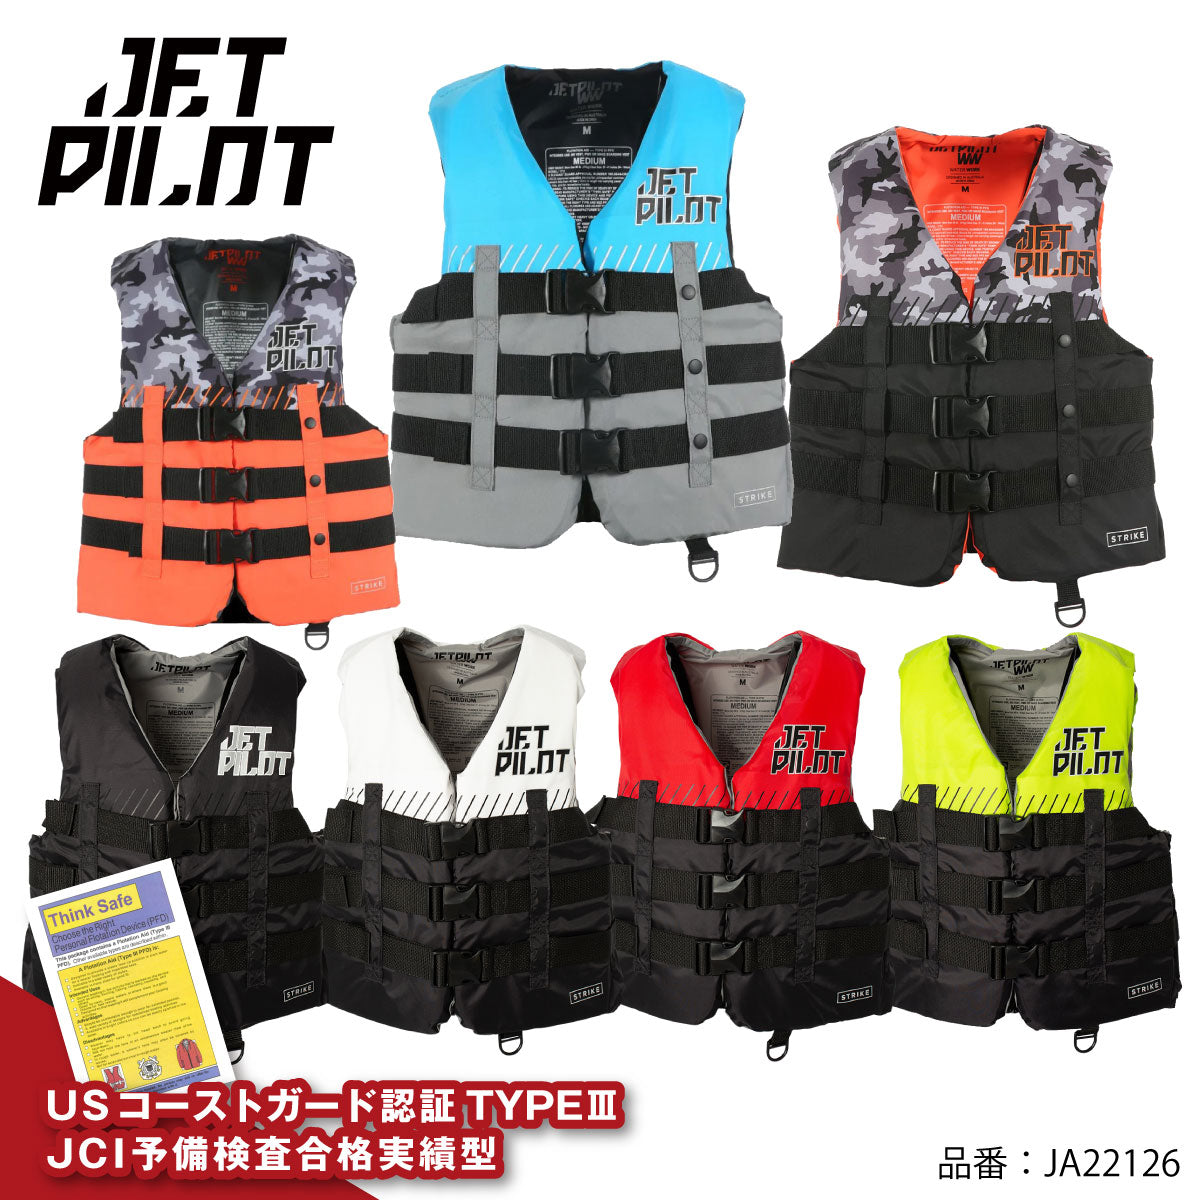 JETPILOT ライフジャケット 小型船舶特殊 JA22126 正規品 STRIKE JCI ...